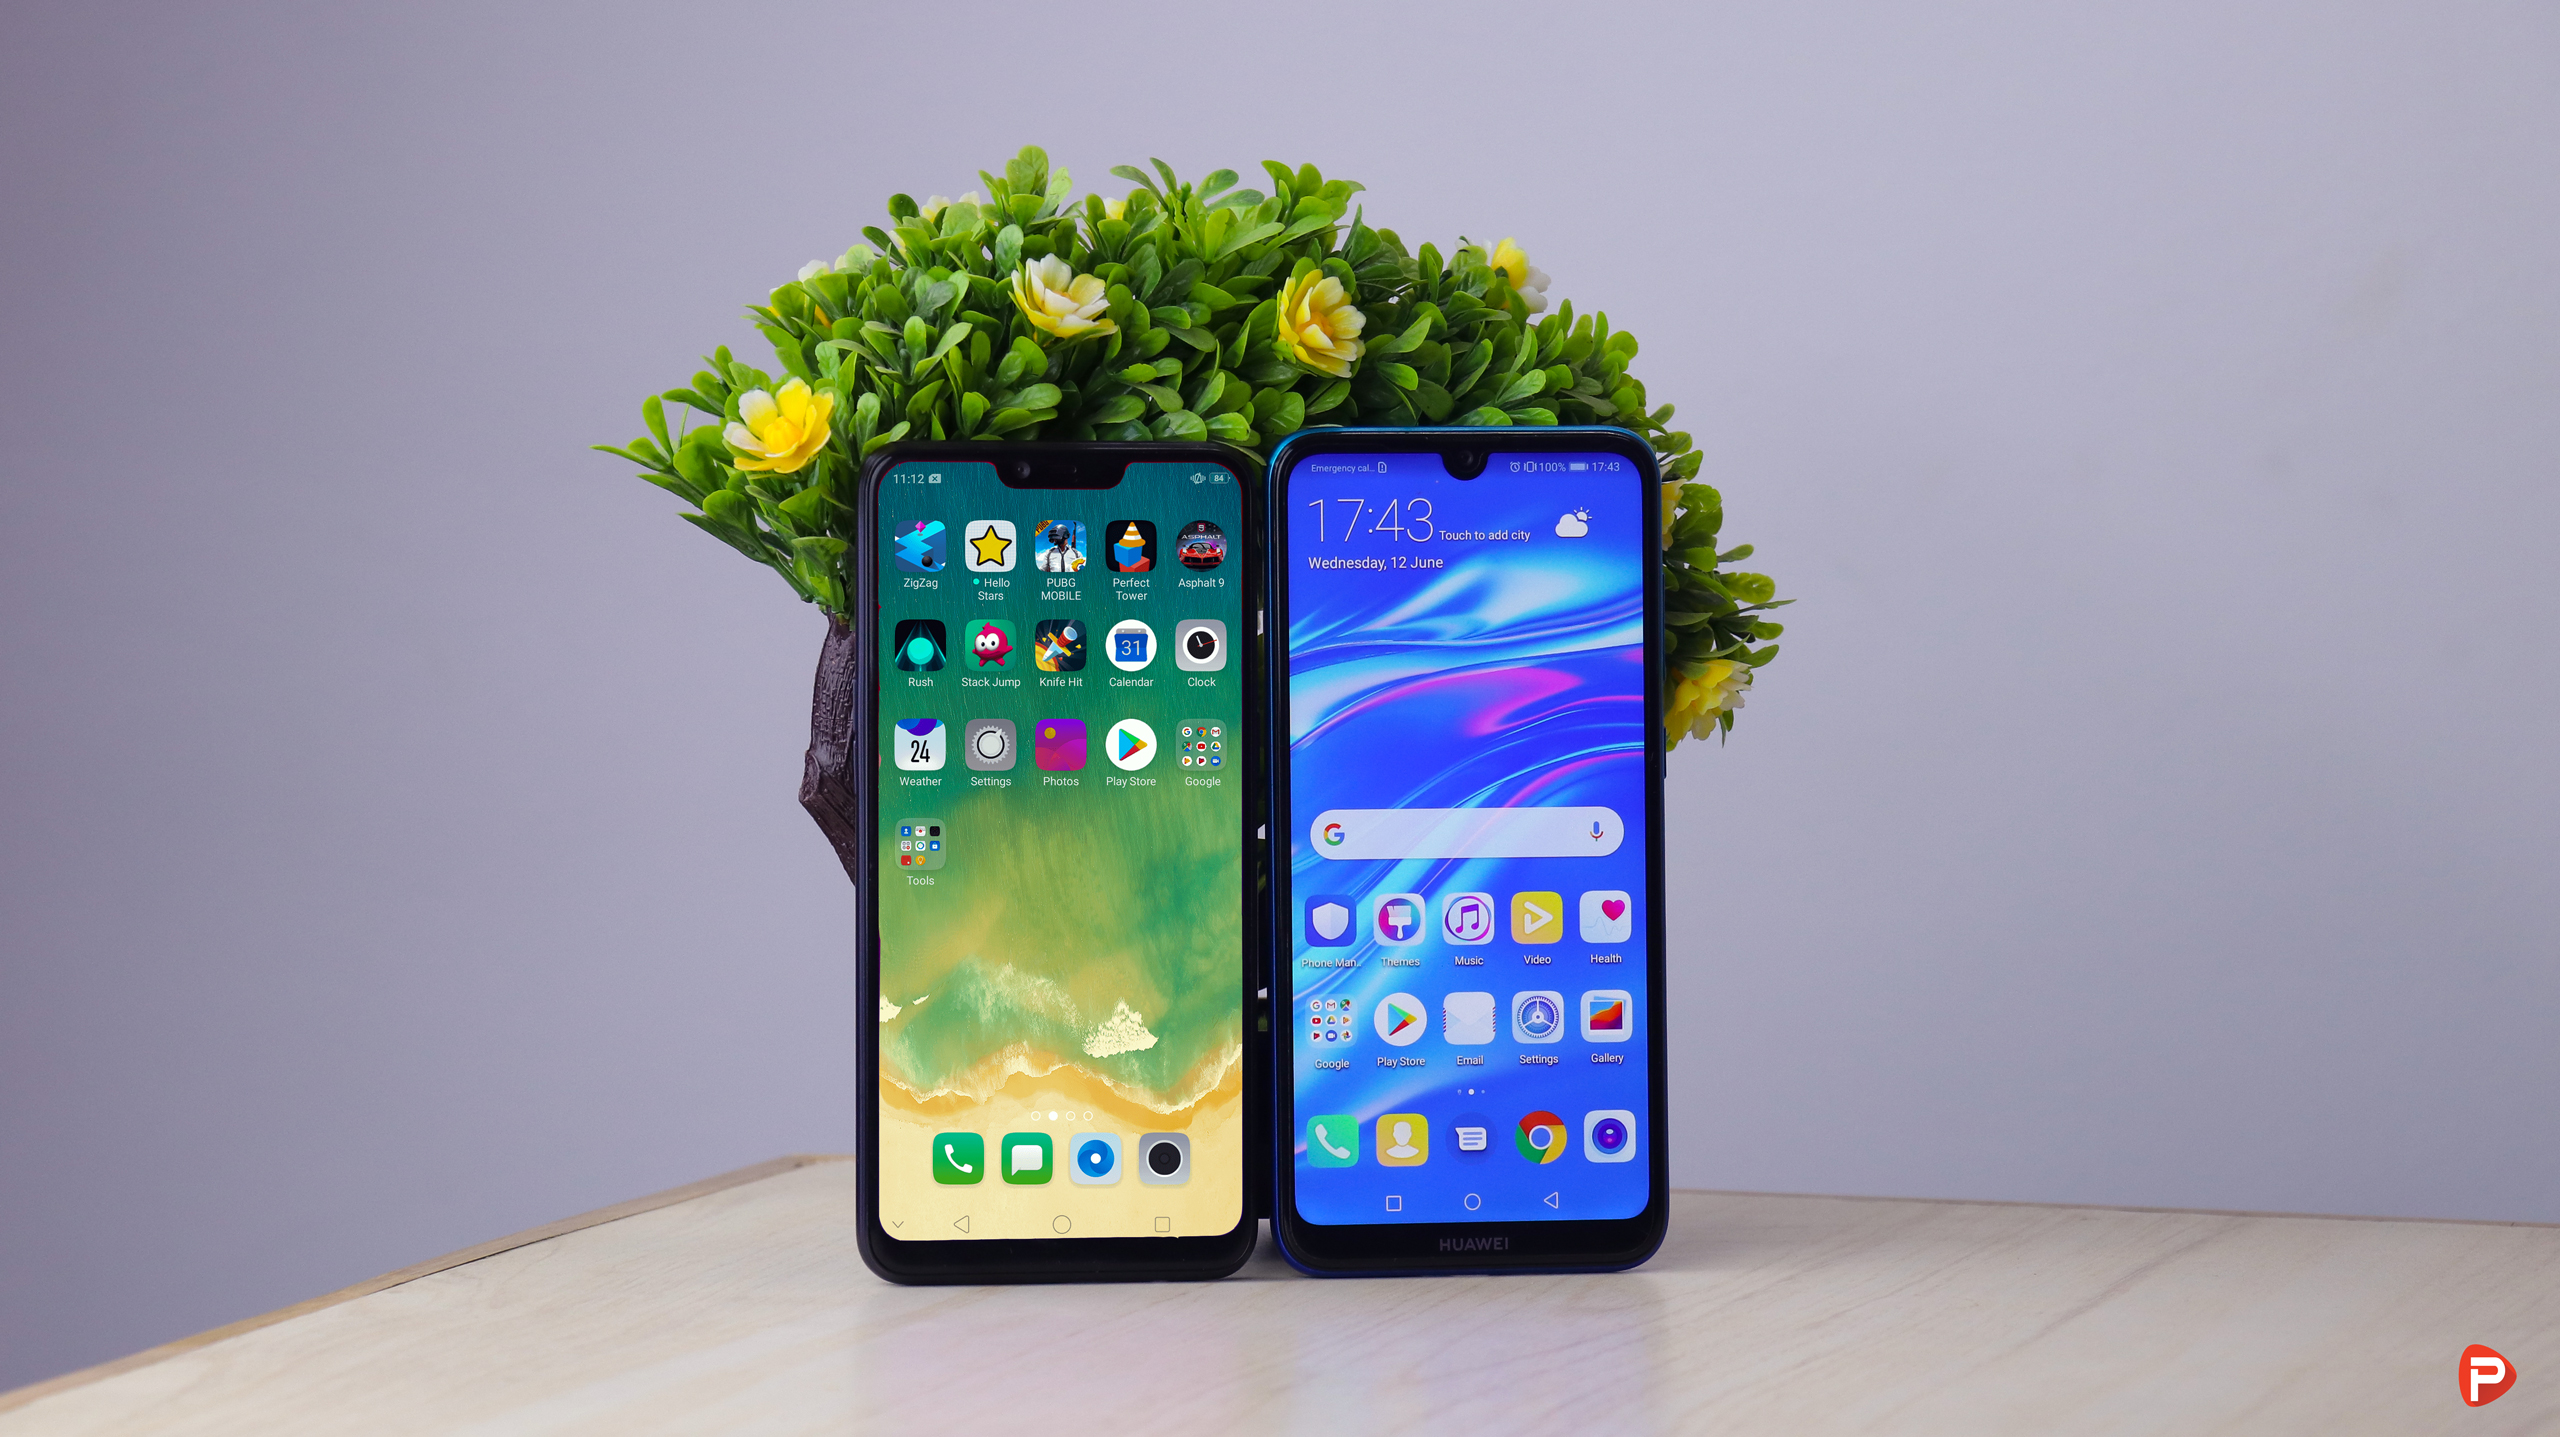 OPPO A3s vs Huawei Y7 Pro 2019